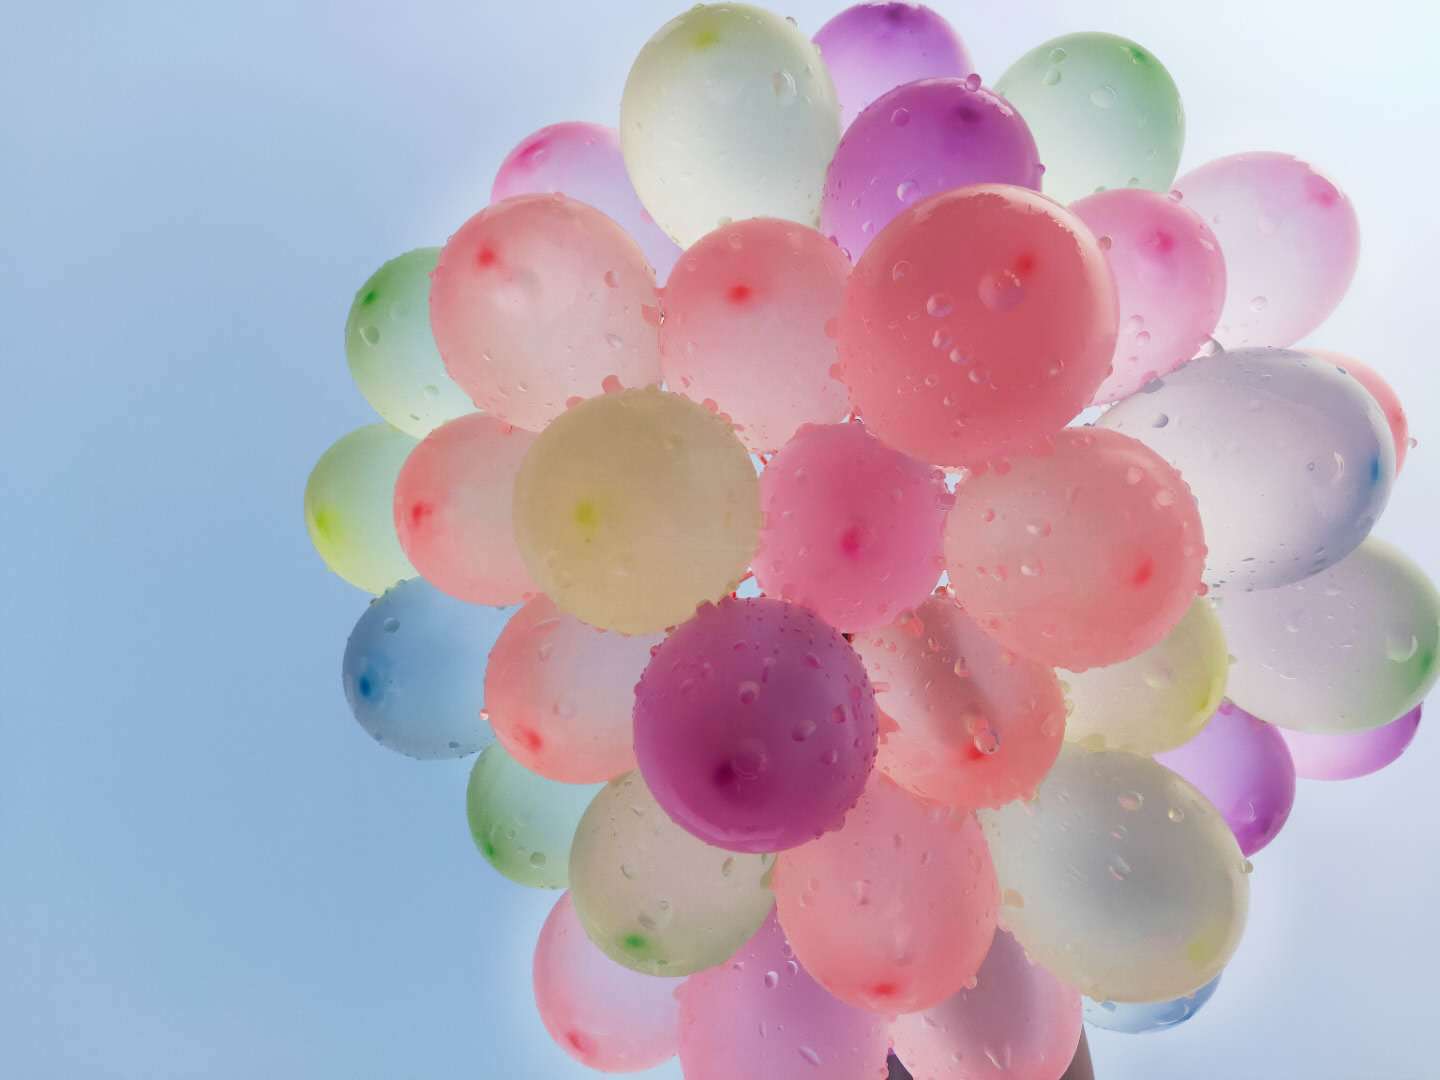 wholesale-three-water-injection-balloon-summer-children-s-toy-balloon